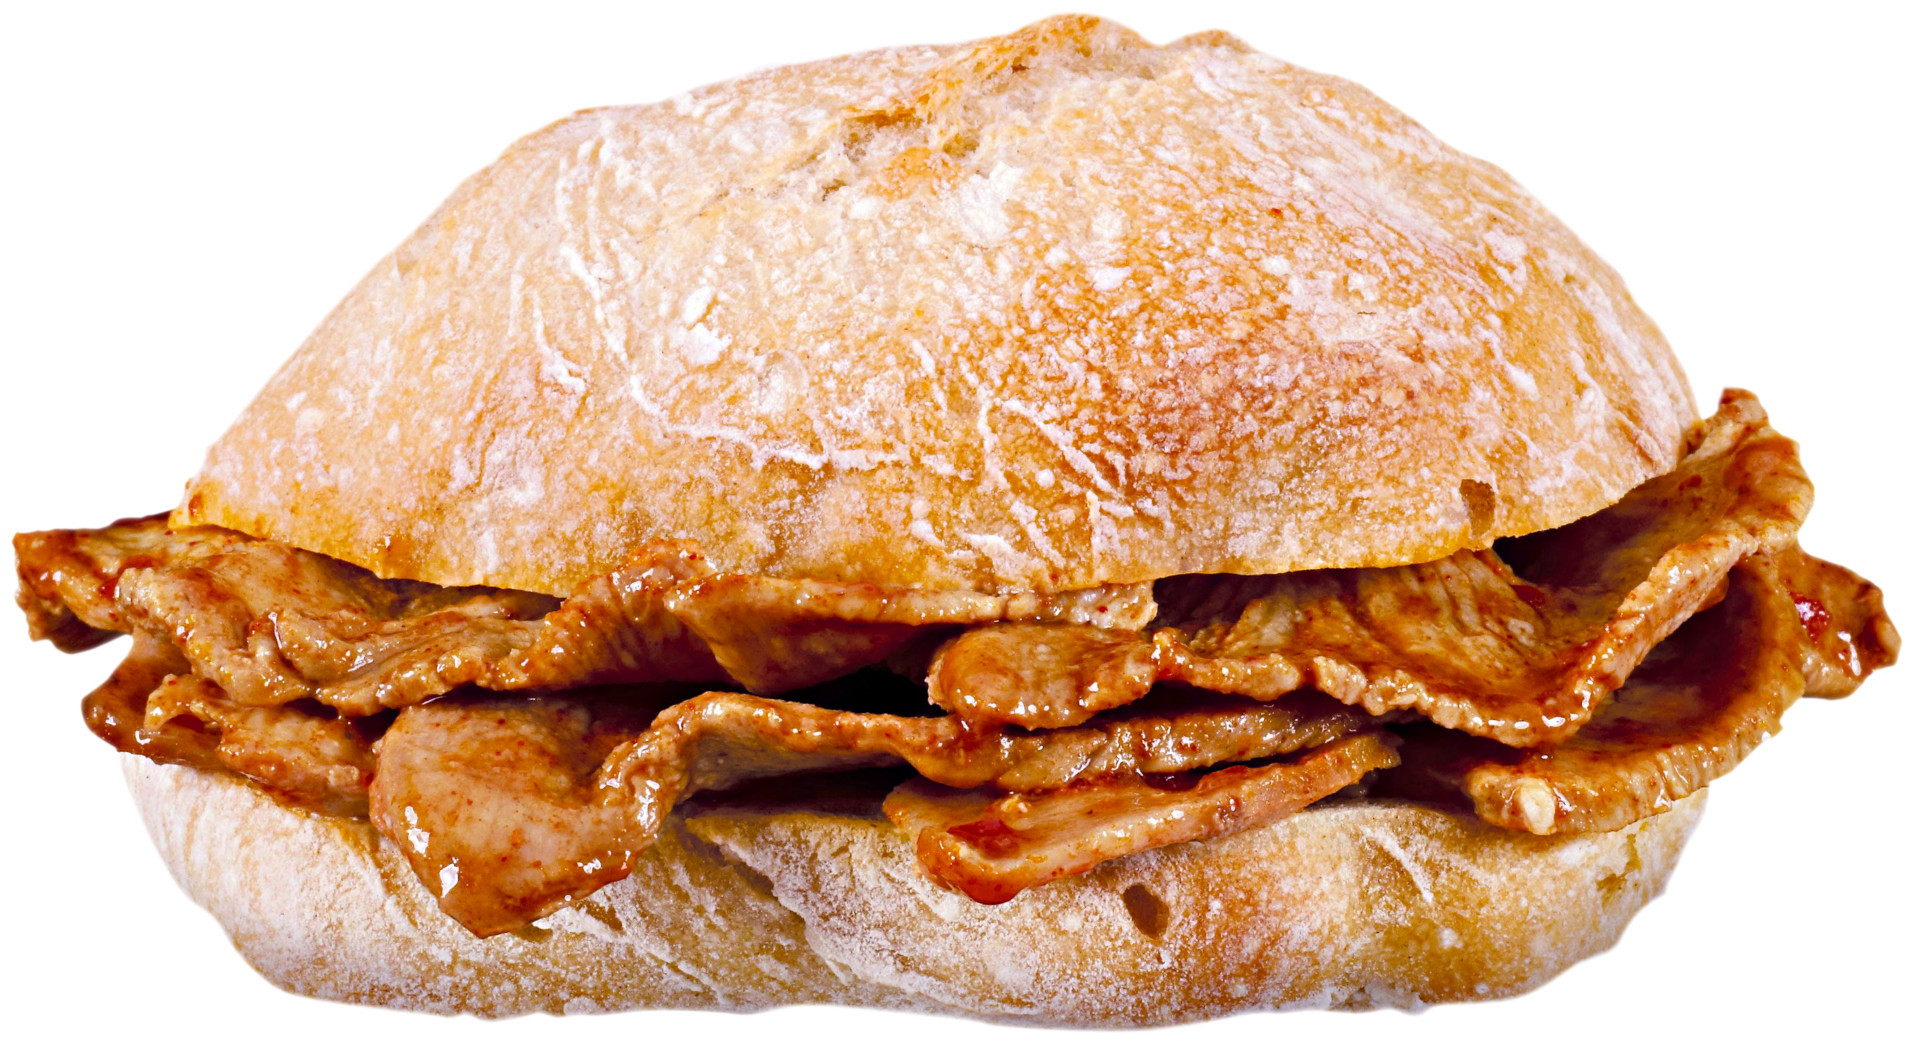 Bifana:  petit sandwich typiquement portugais. Il se prépare avec du papo seco (pain portugais) dans lequel on place des fines escalopes de porc marinées, et qu'on arrose avec le jus de cuisson